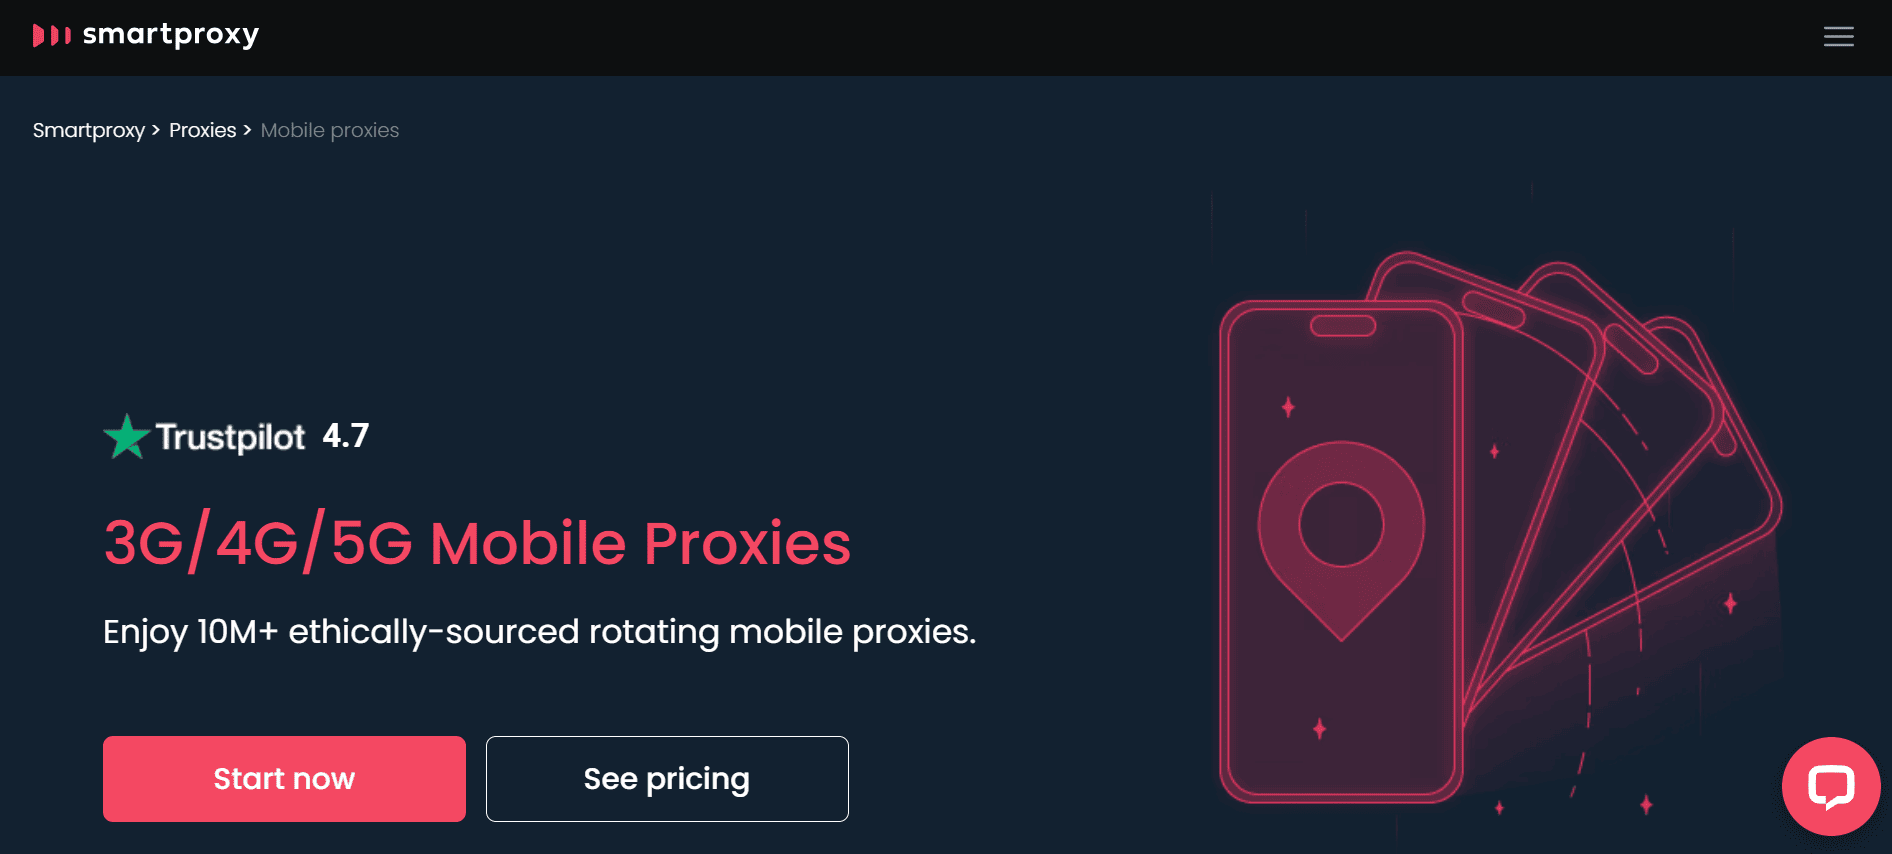 smartproxy cele mai bune servere proxy mobile